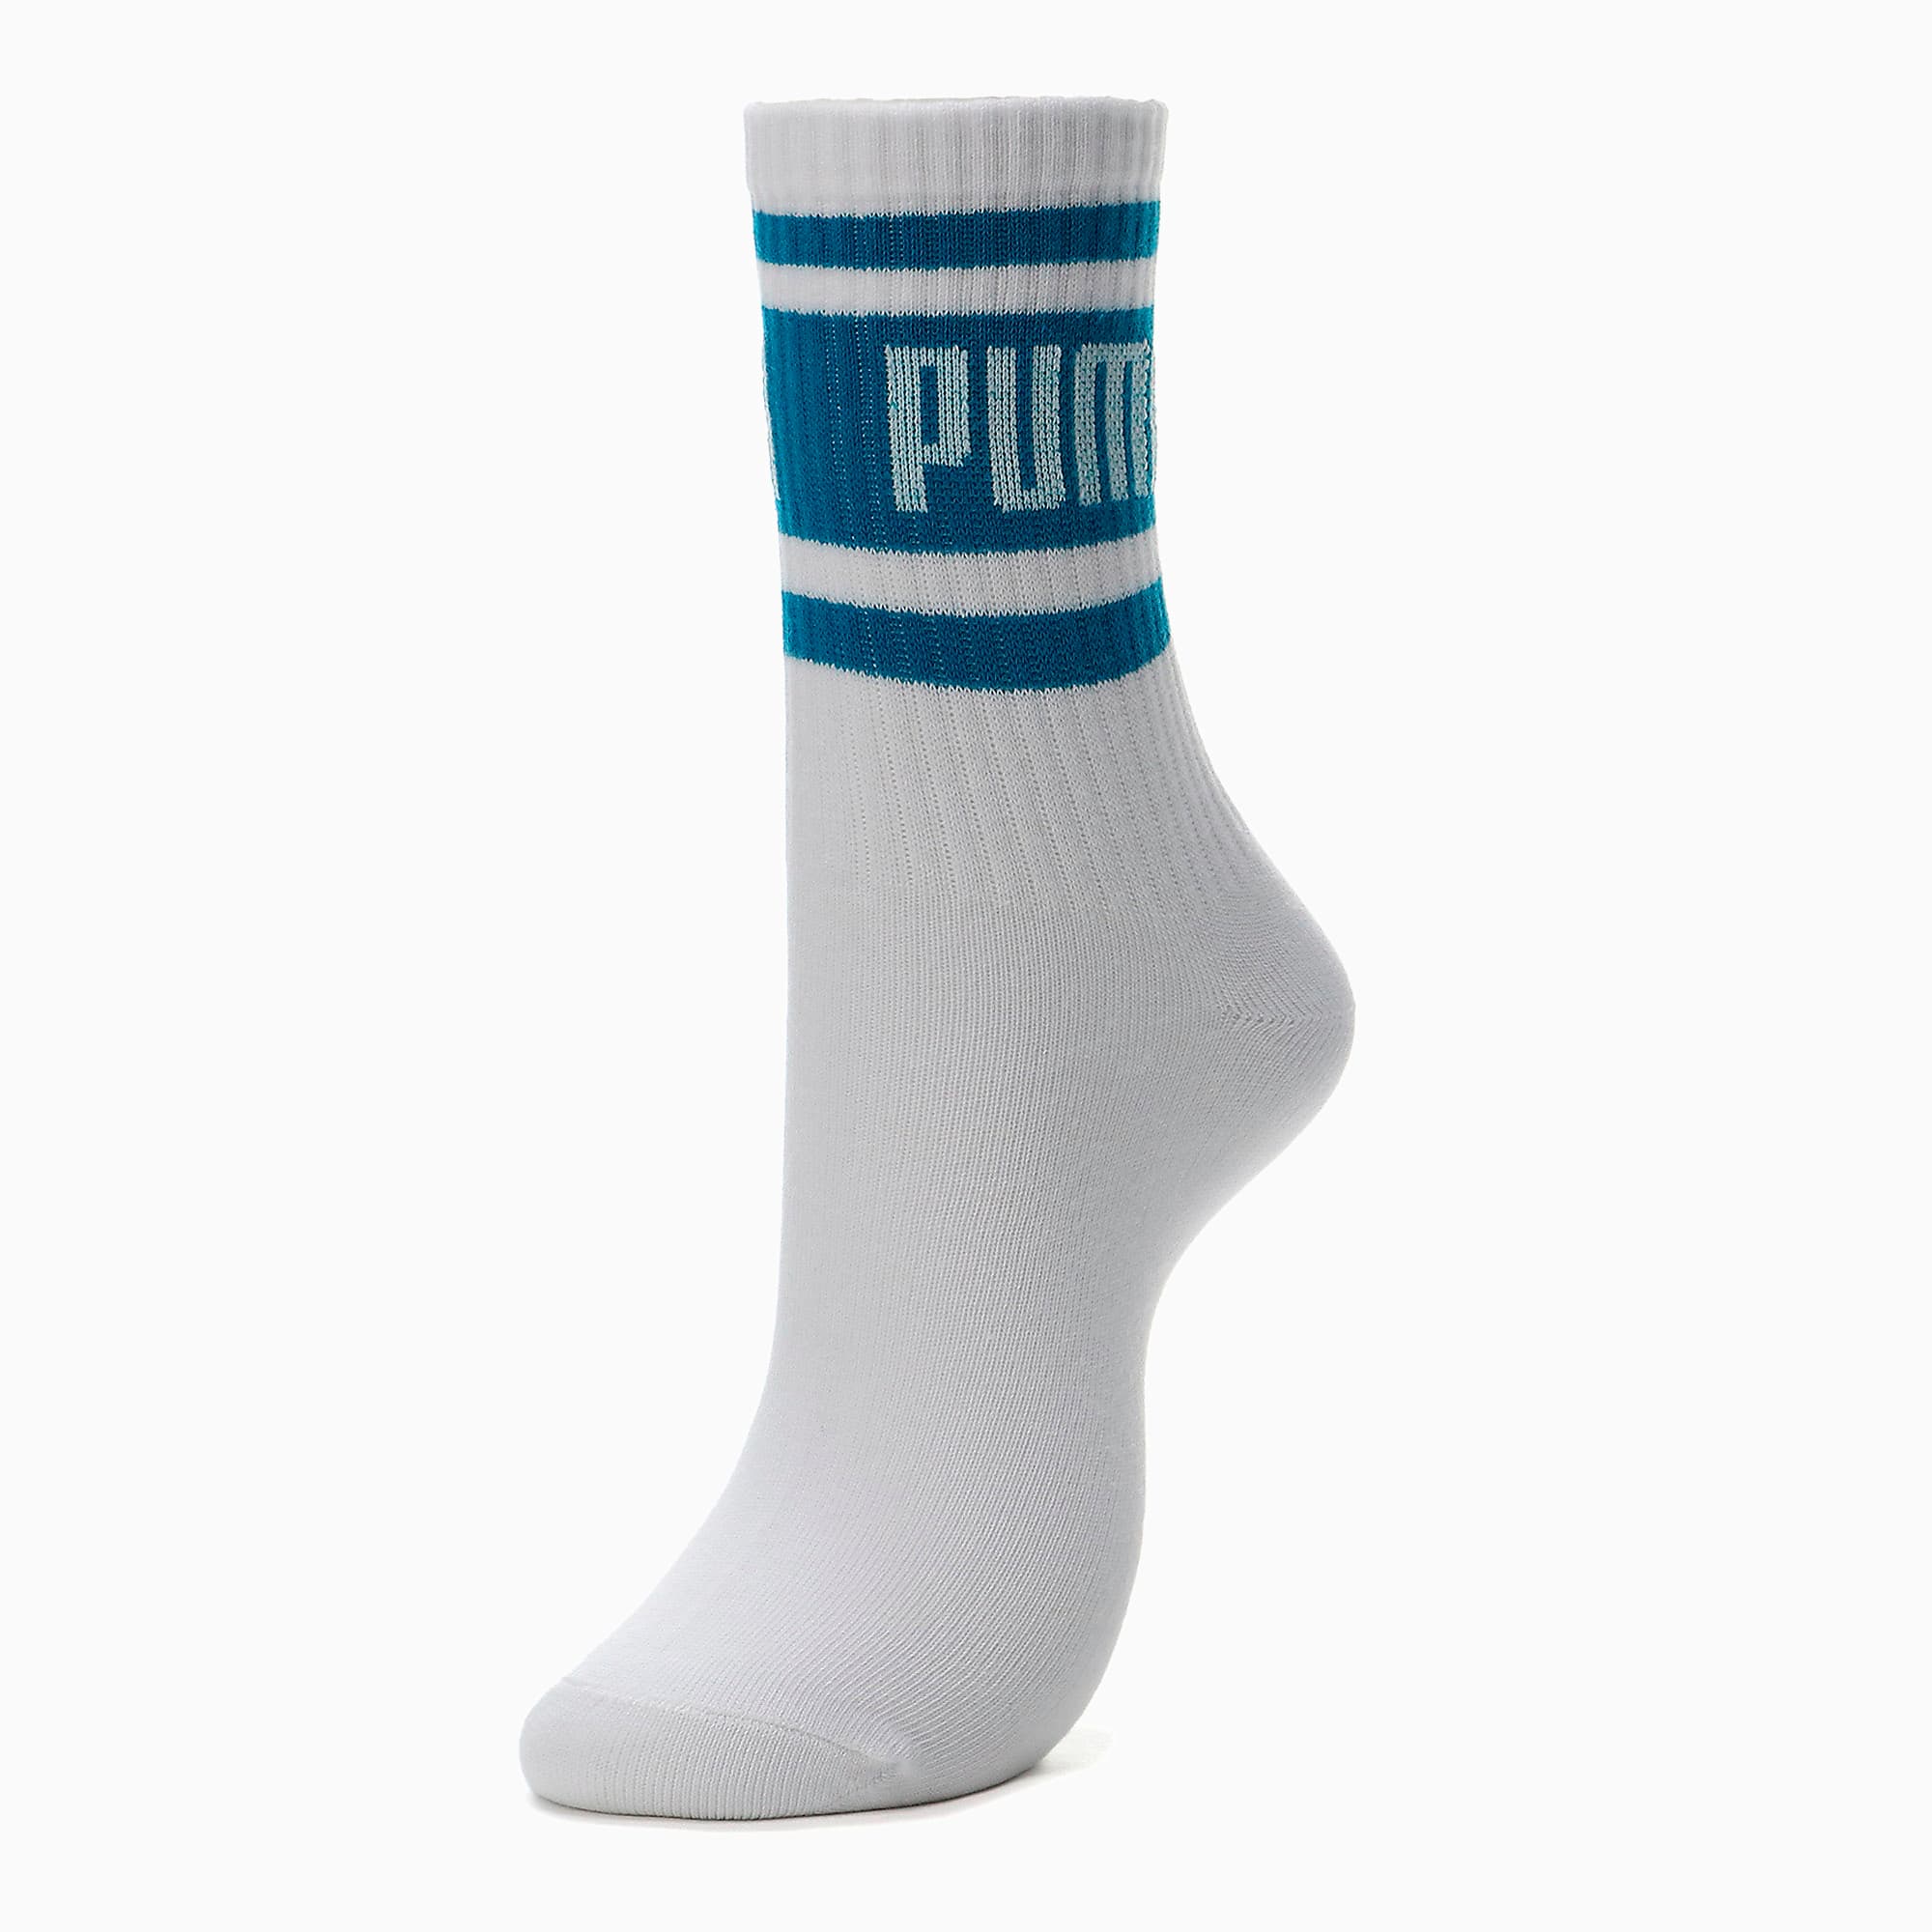 Puma公式 ユニセックス プーマ ショート ソックス 靴下 1足組